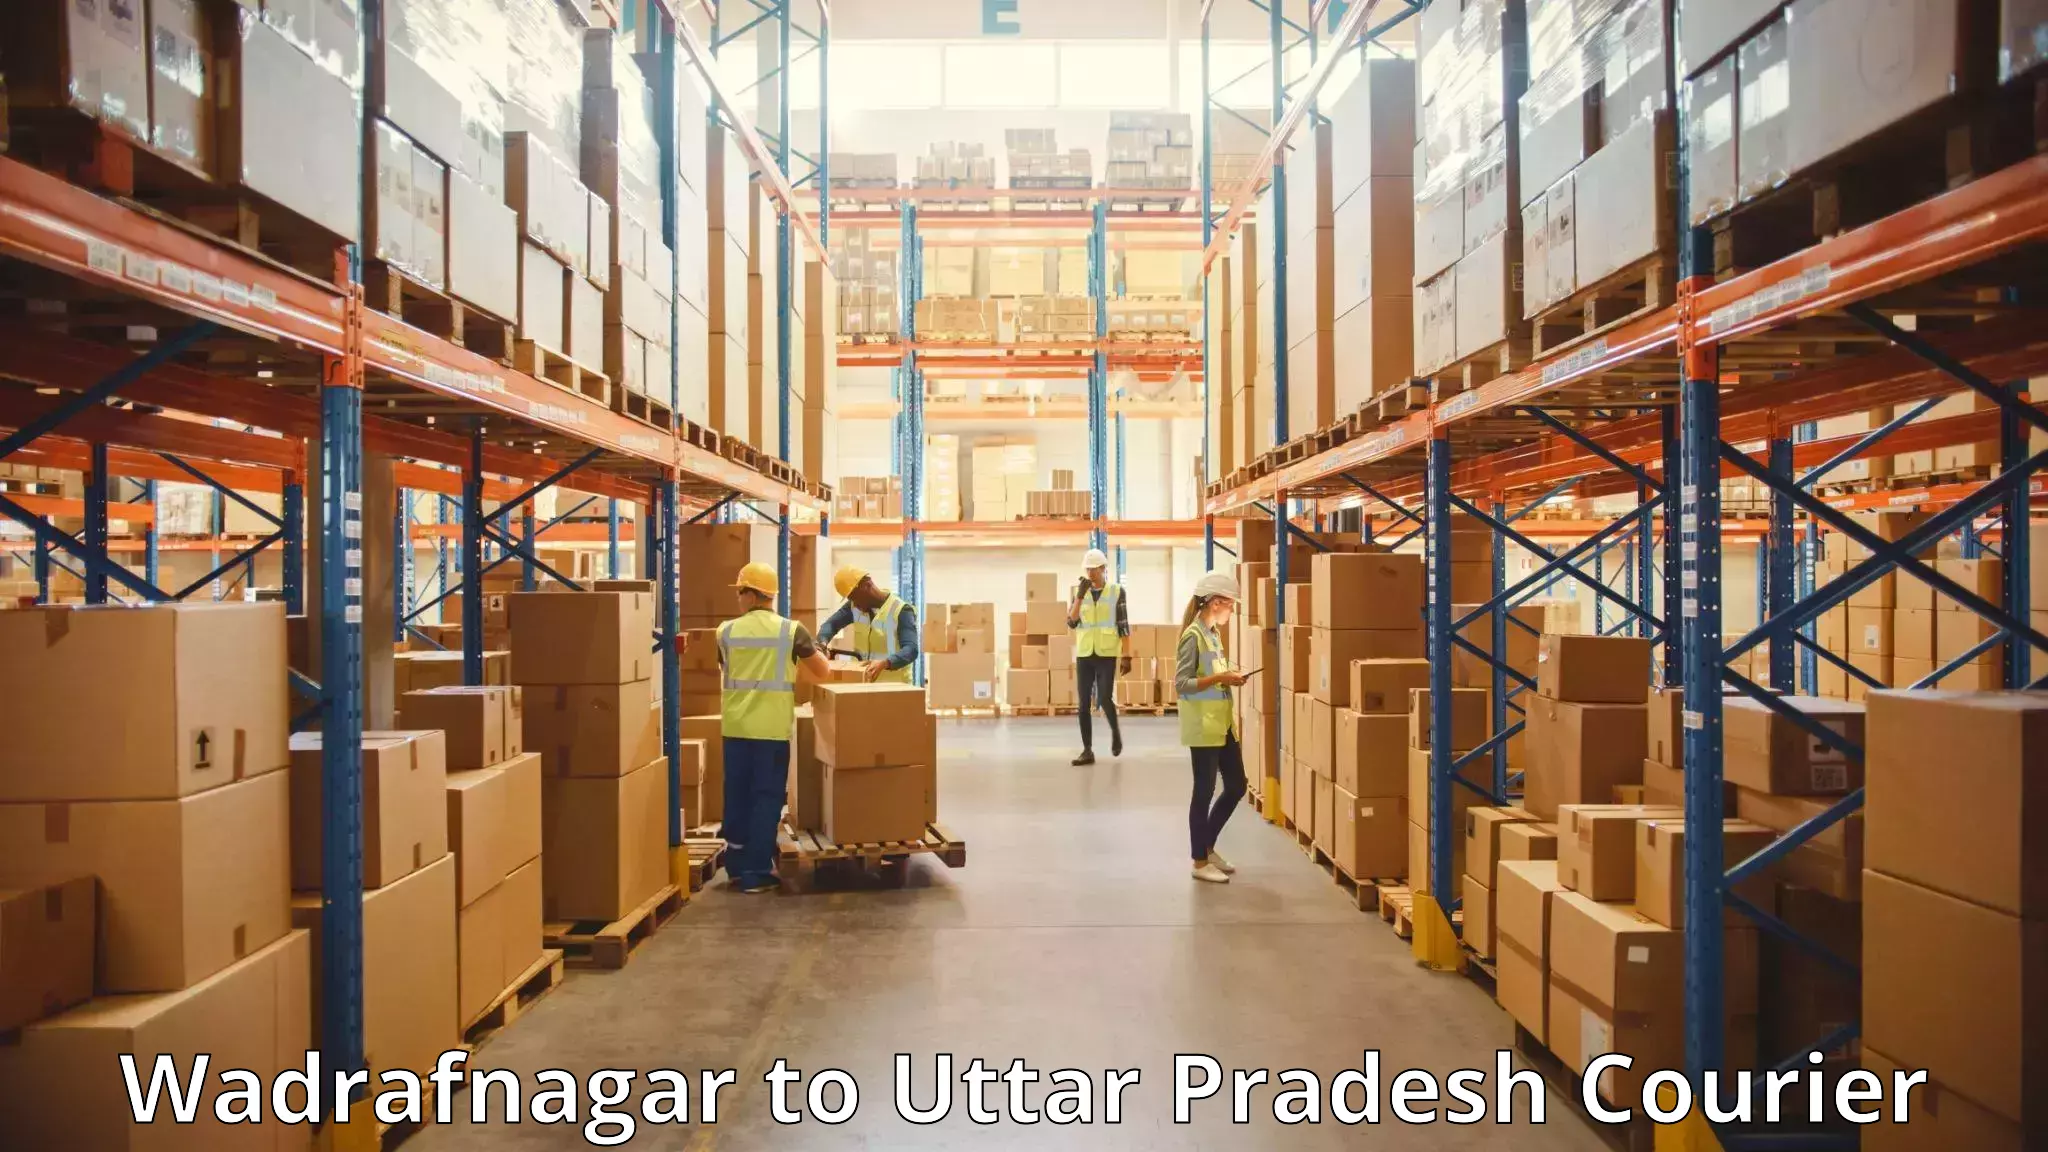 Digital baggage courier Wadrafnagar to Dohrighat